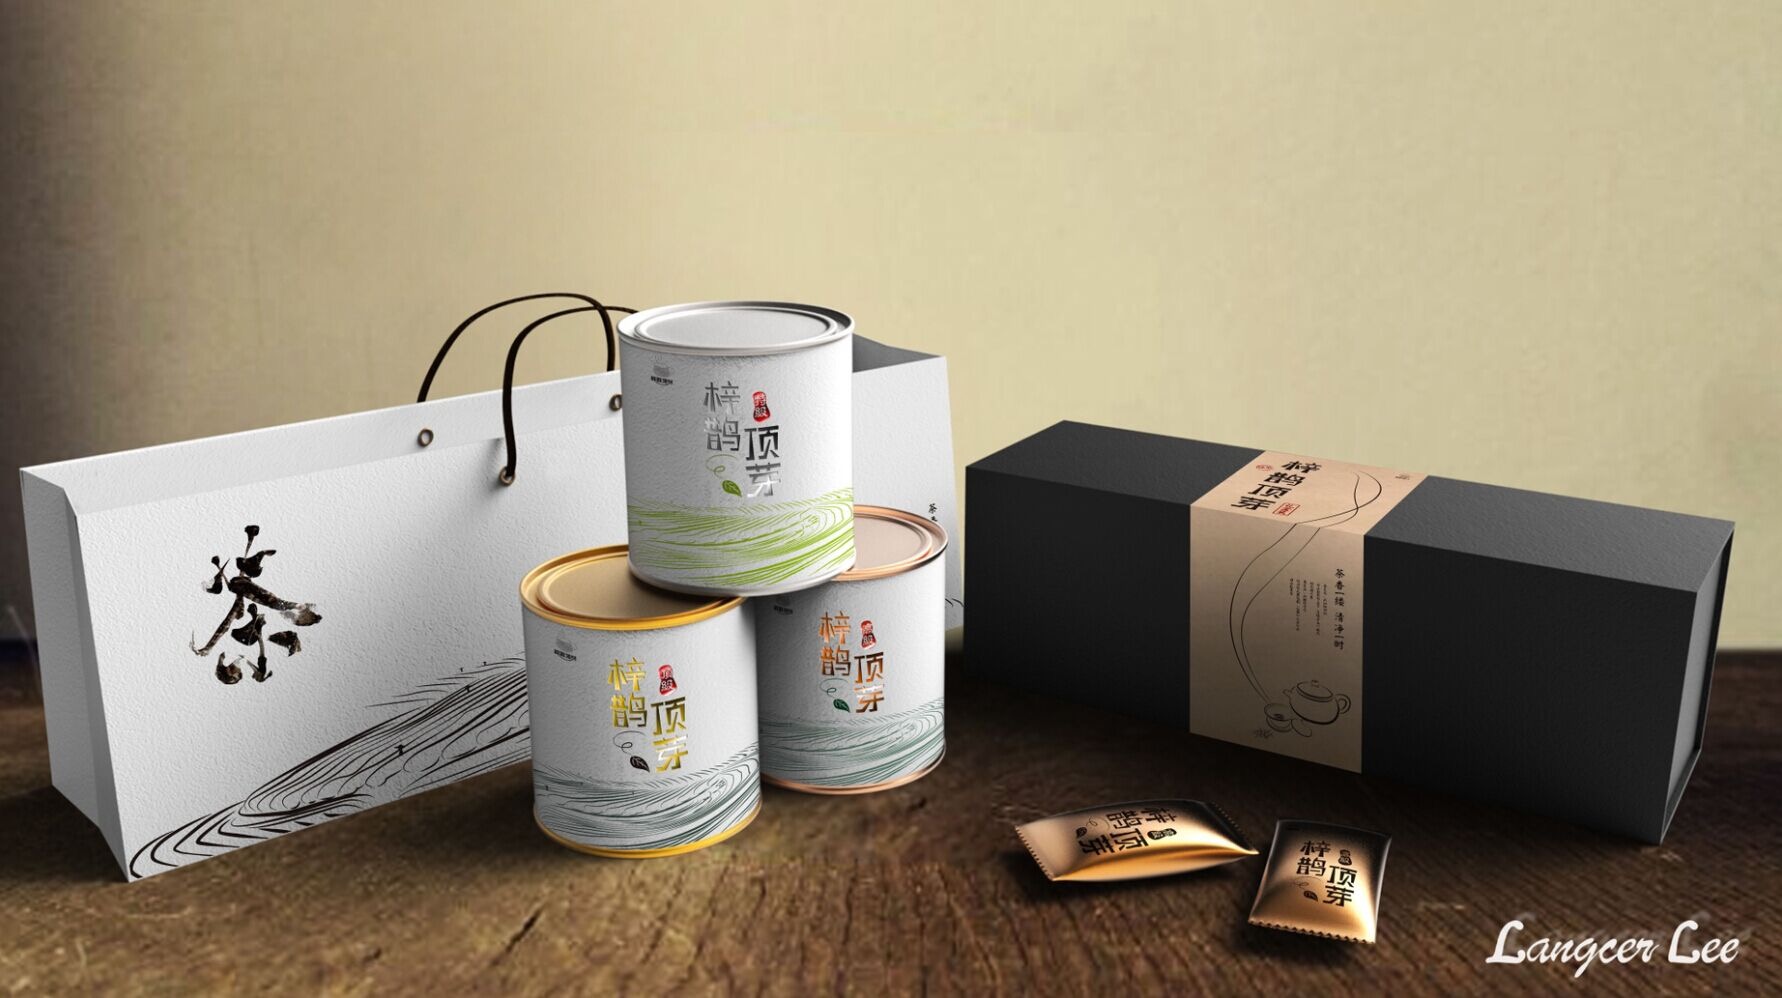 经典杭州礼盒包装设计公司作品排名前六名单推出 